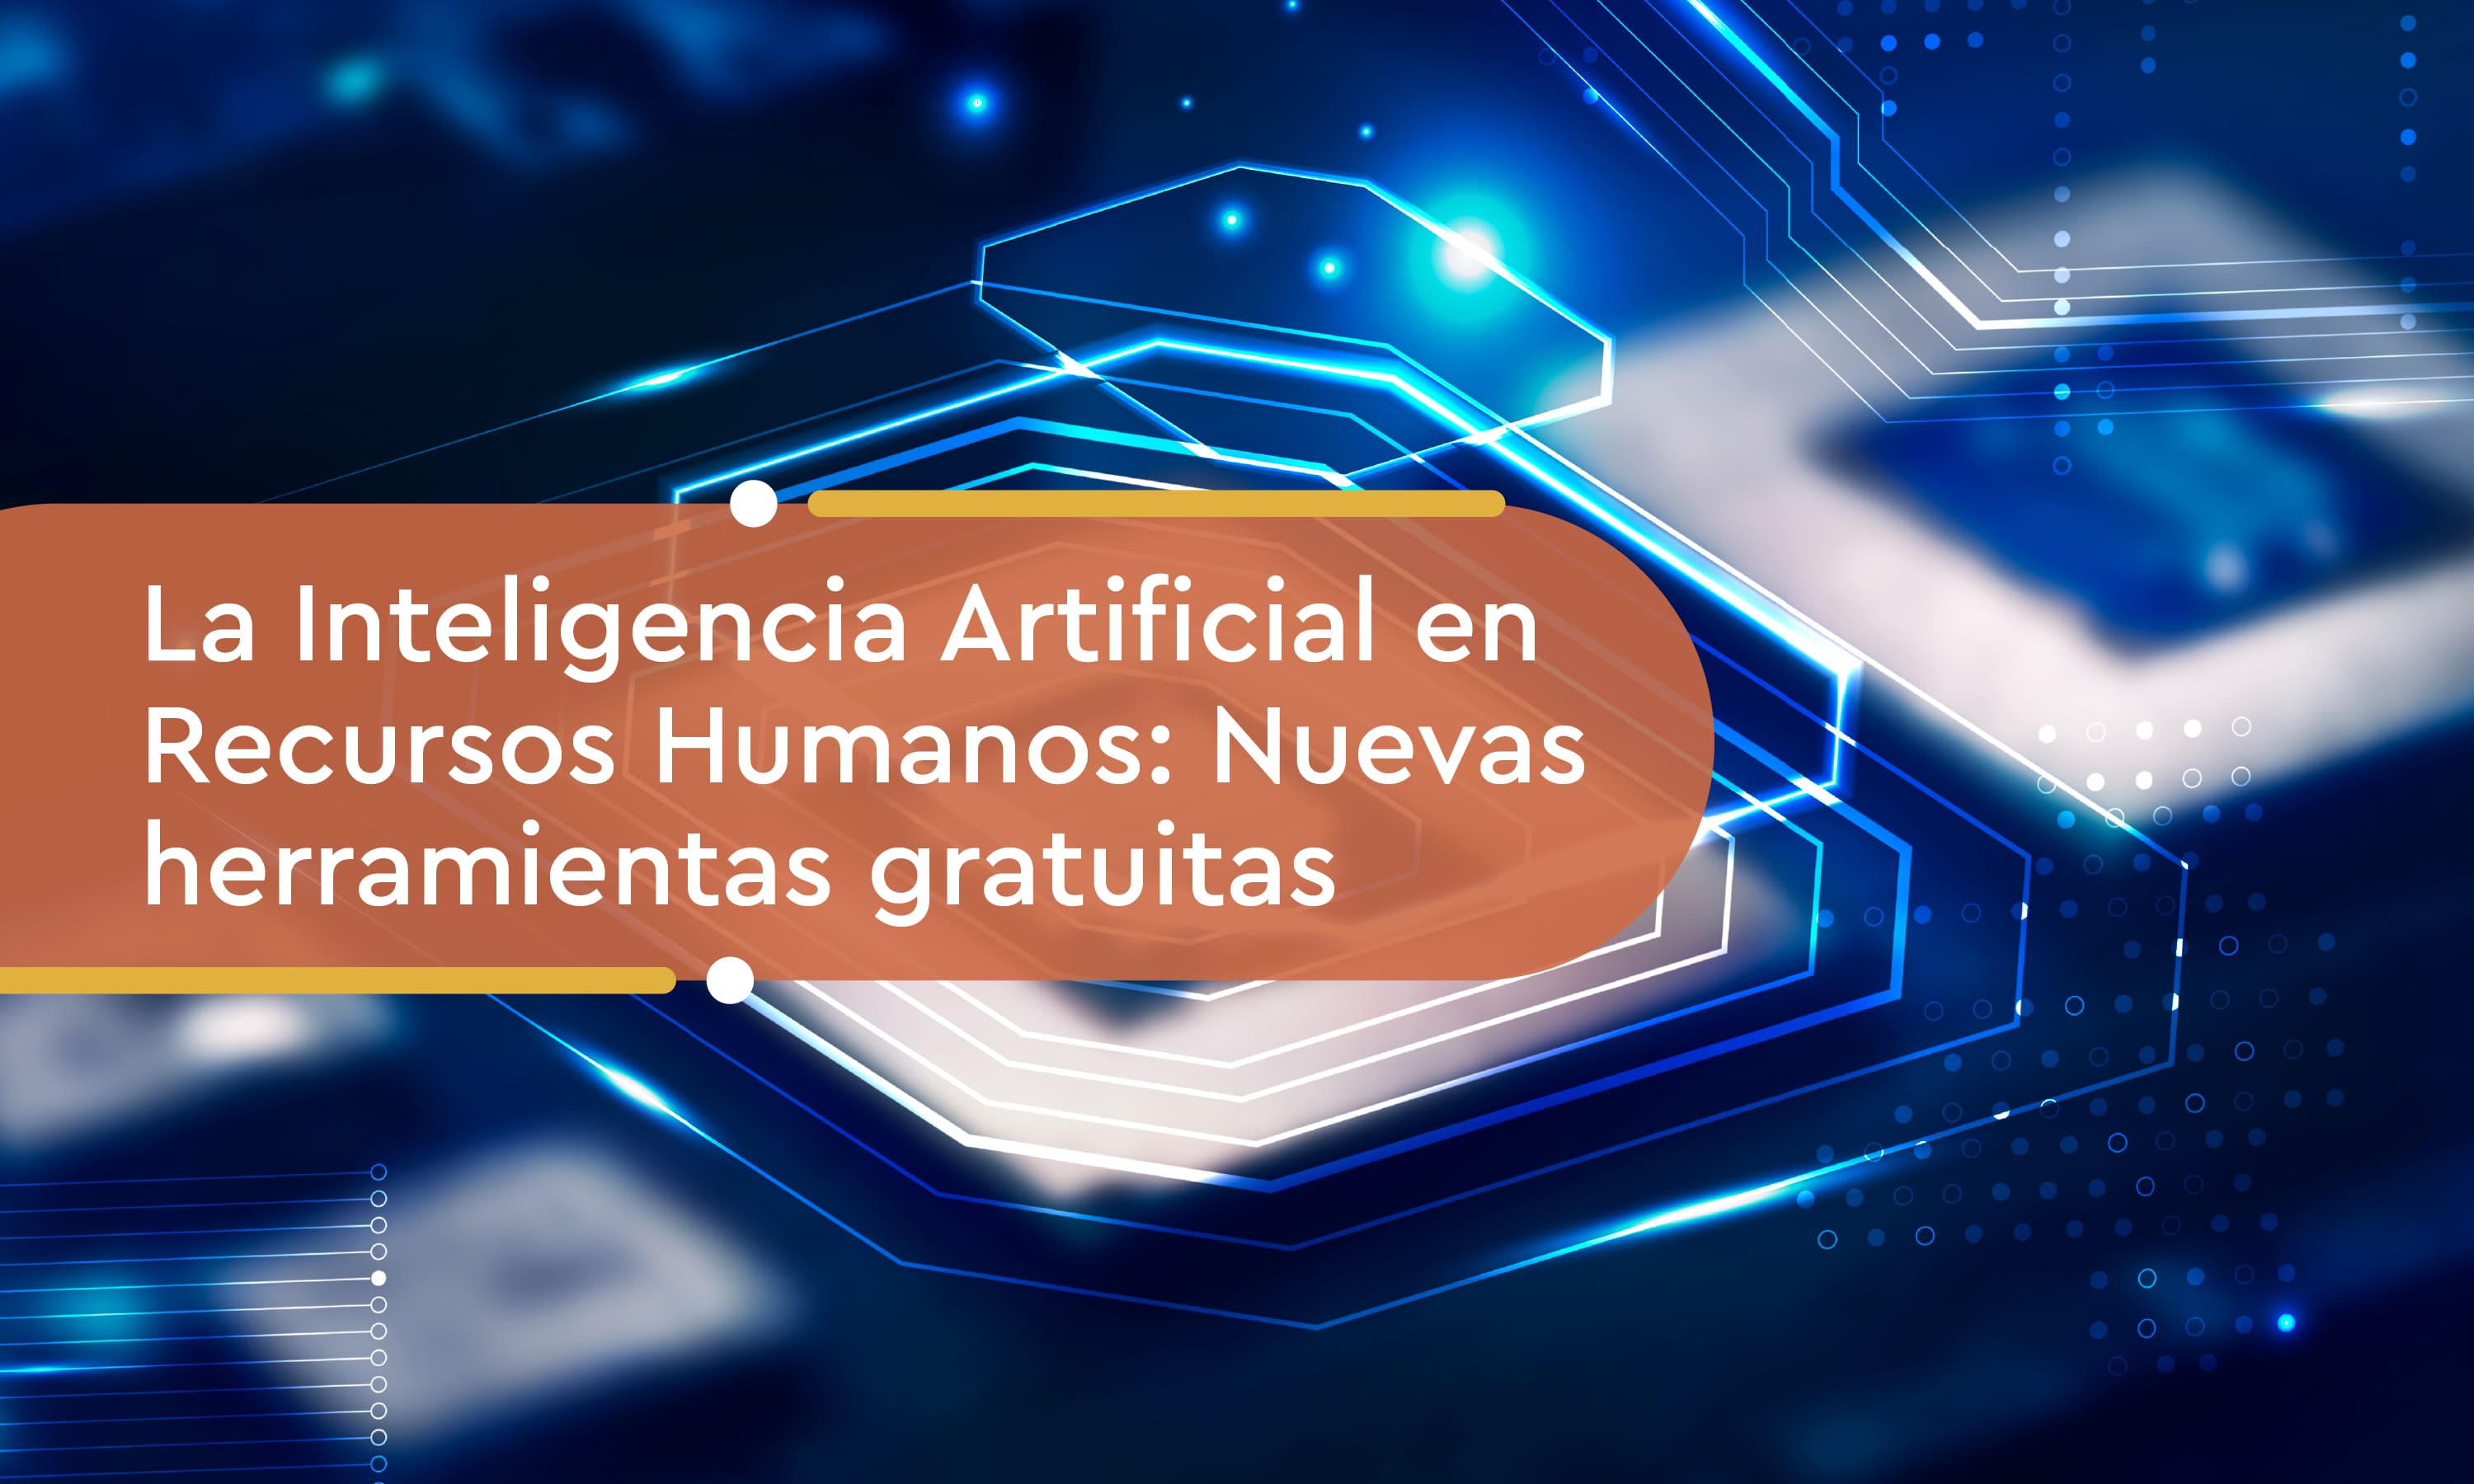 La Inteligencia Artificial en Recursos Humanos: Nuevas herramientas gratuitas